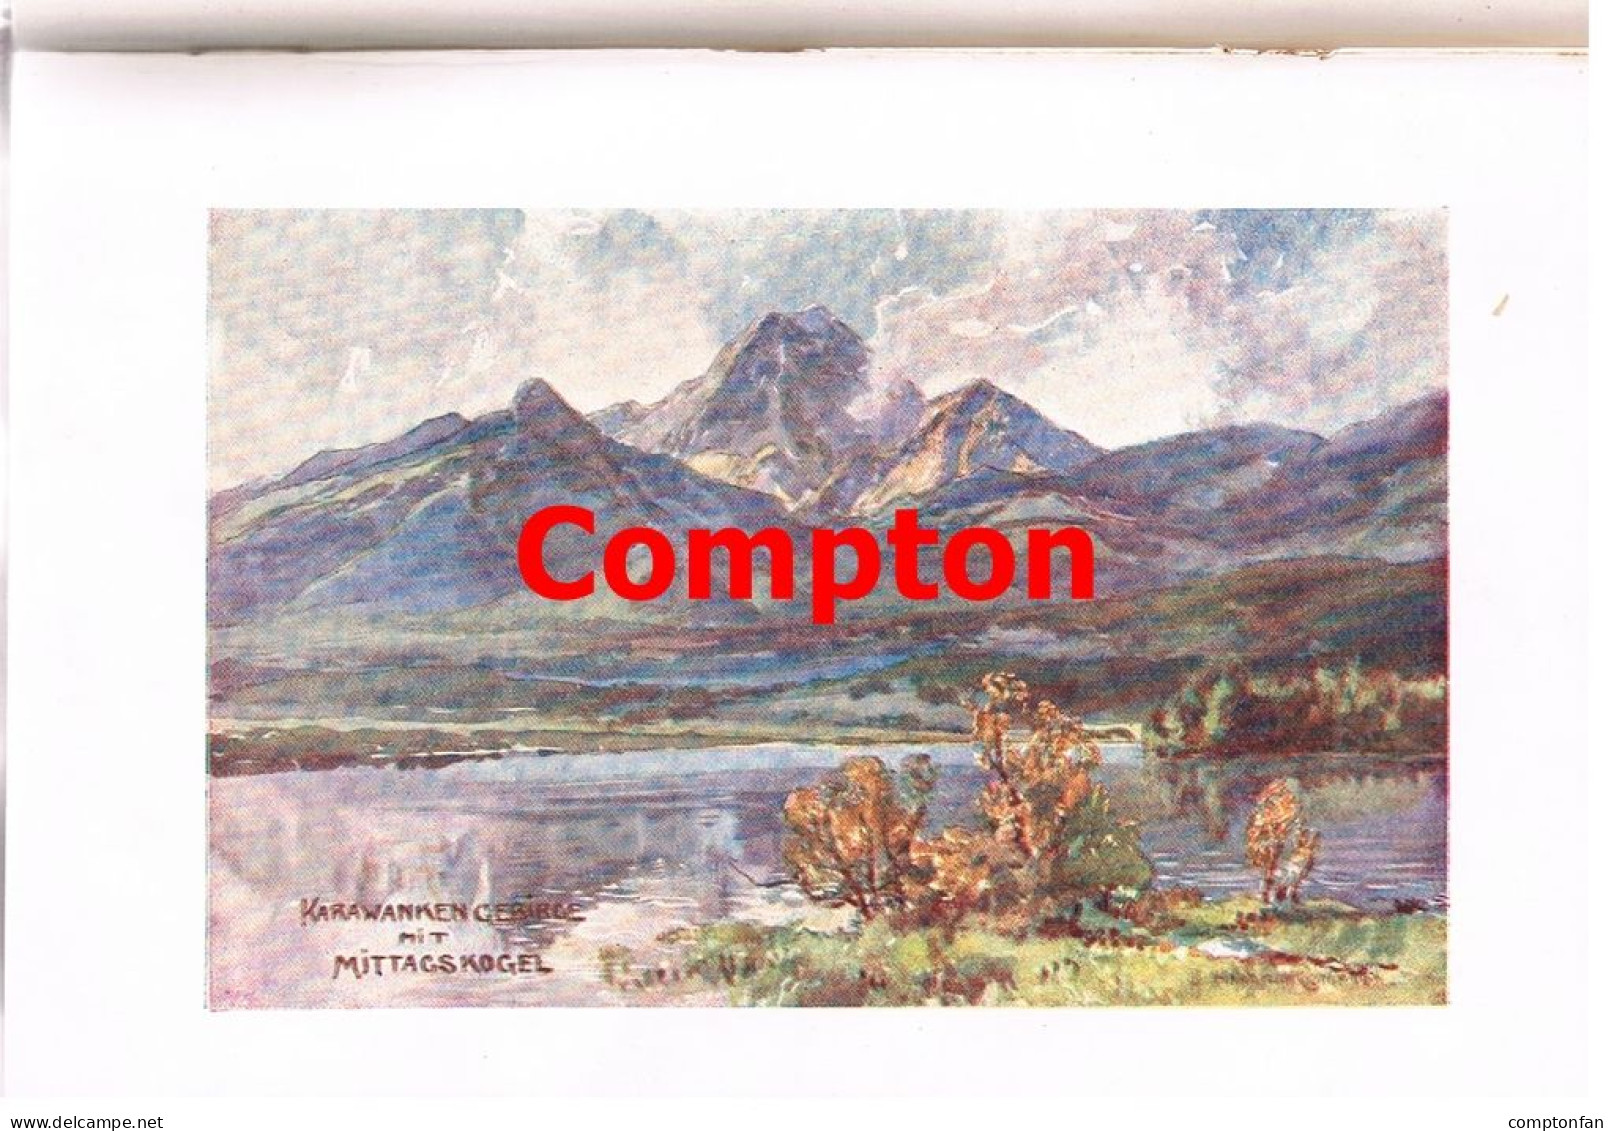 B100 872 Ehrenbuch Kurbad Velden Wörthersee Compton absolute Rarität 1905 !!